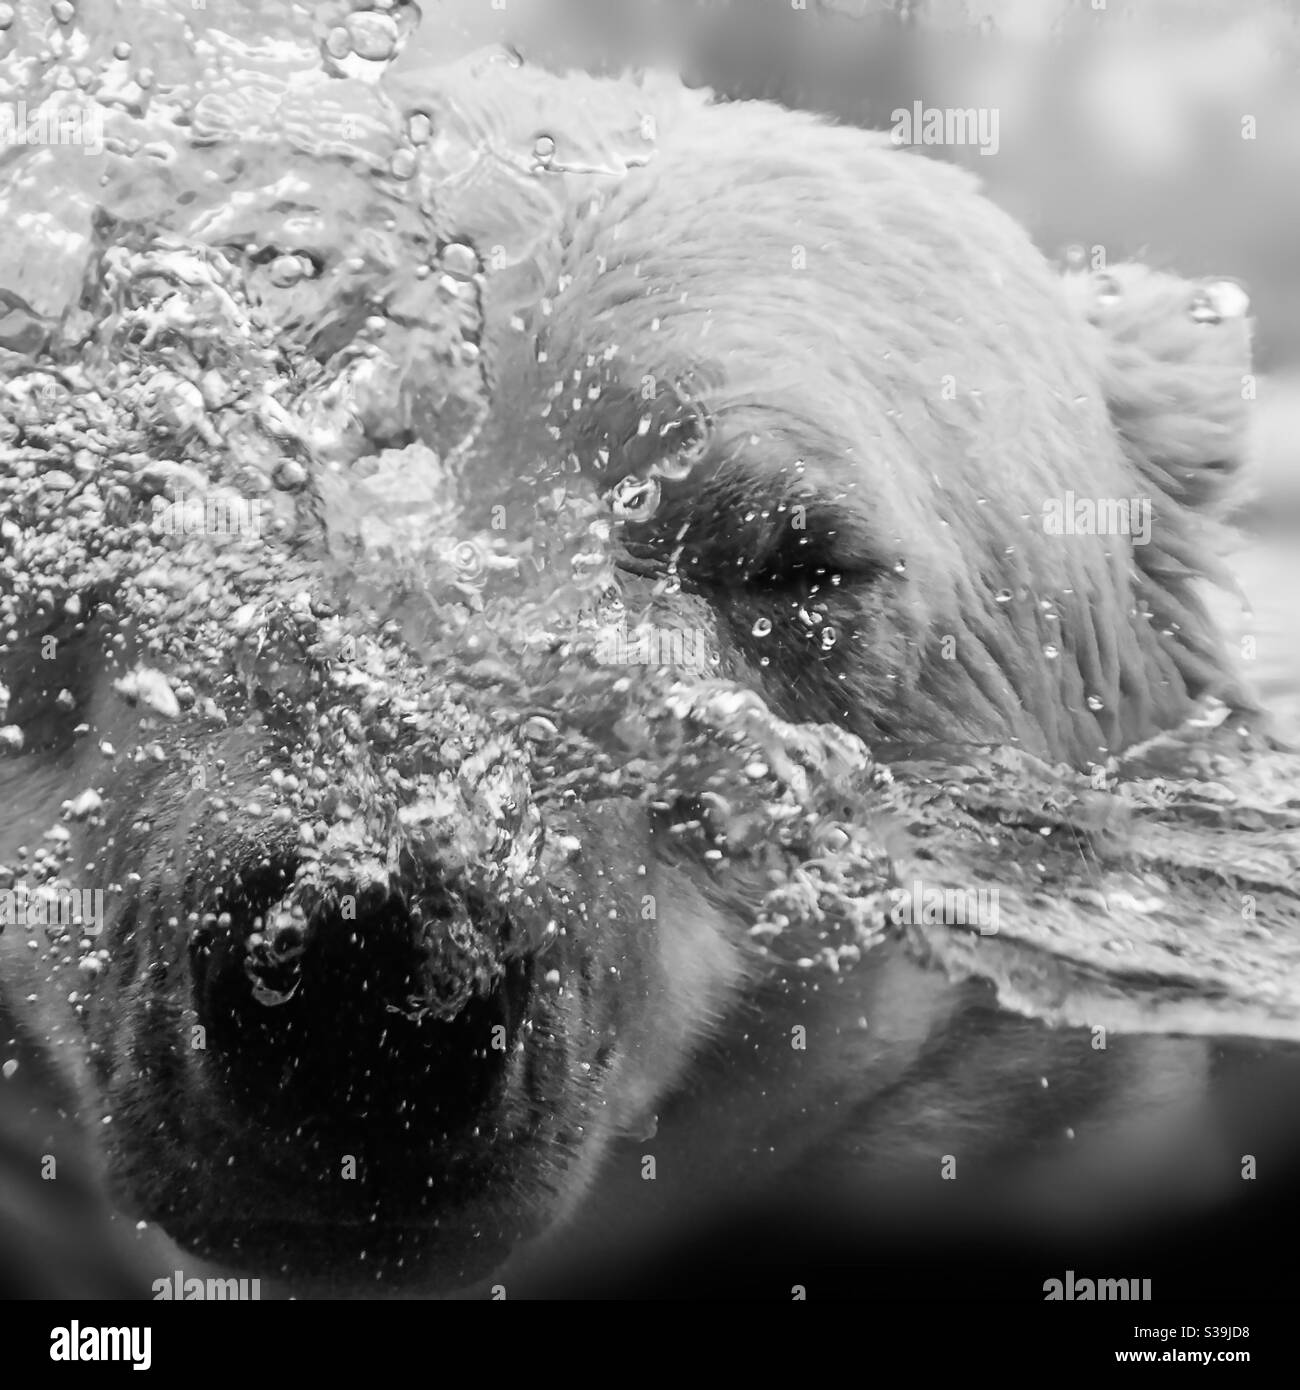 Eisbär spritzt, der Kopf wirbelt Wasser und Luftblasen, schwarz und weiß Stockfoto